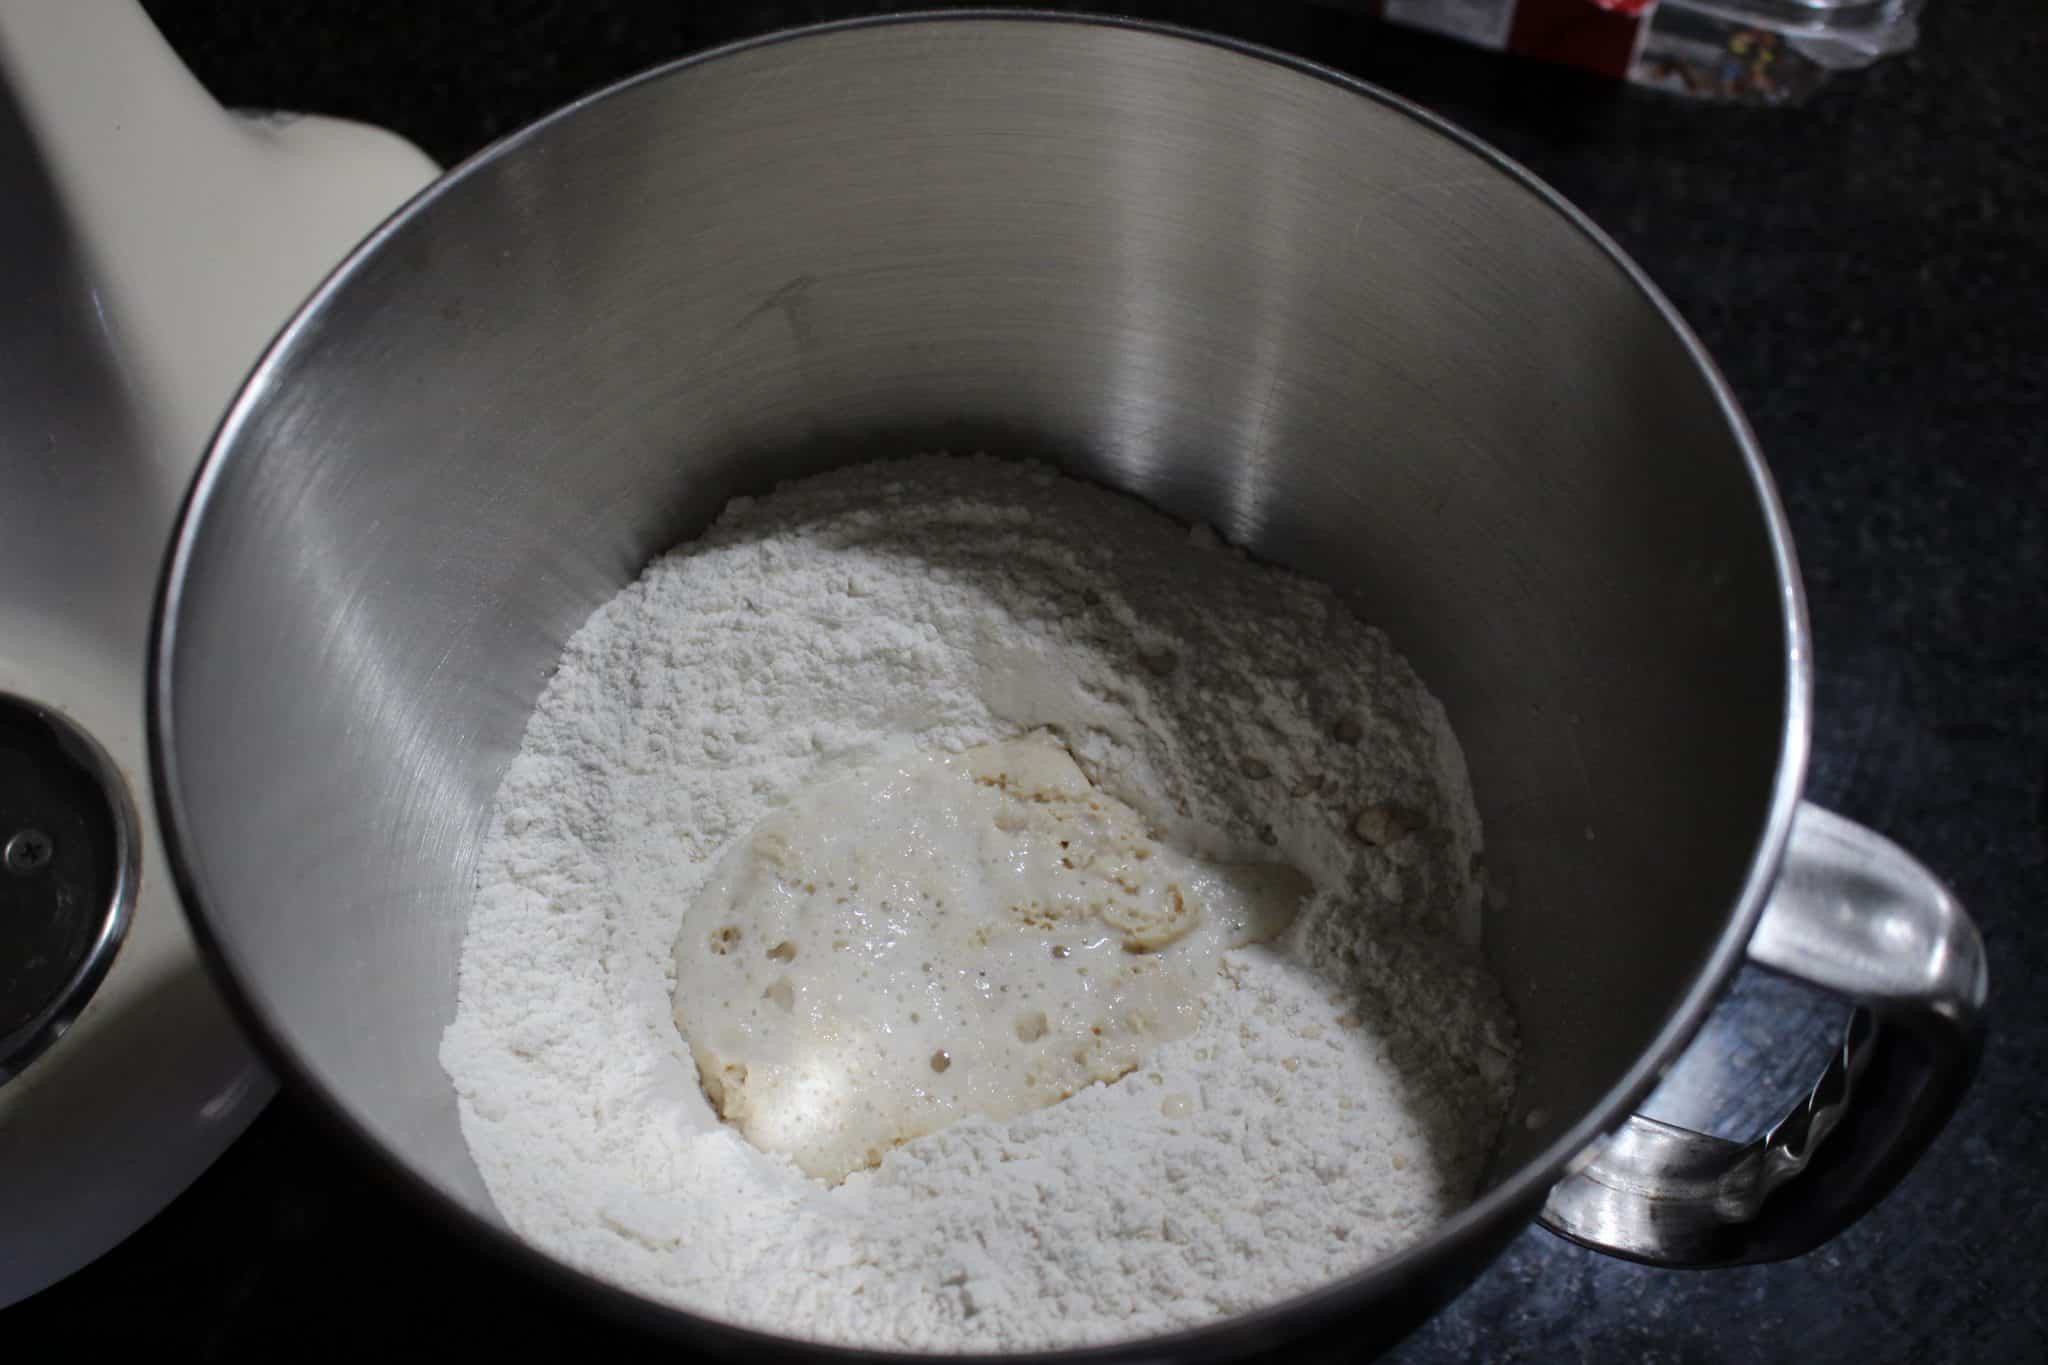 Combine the flour and salt